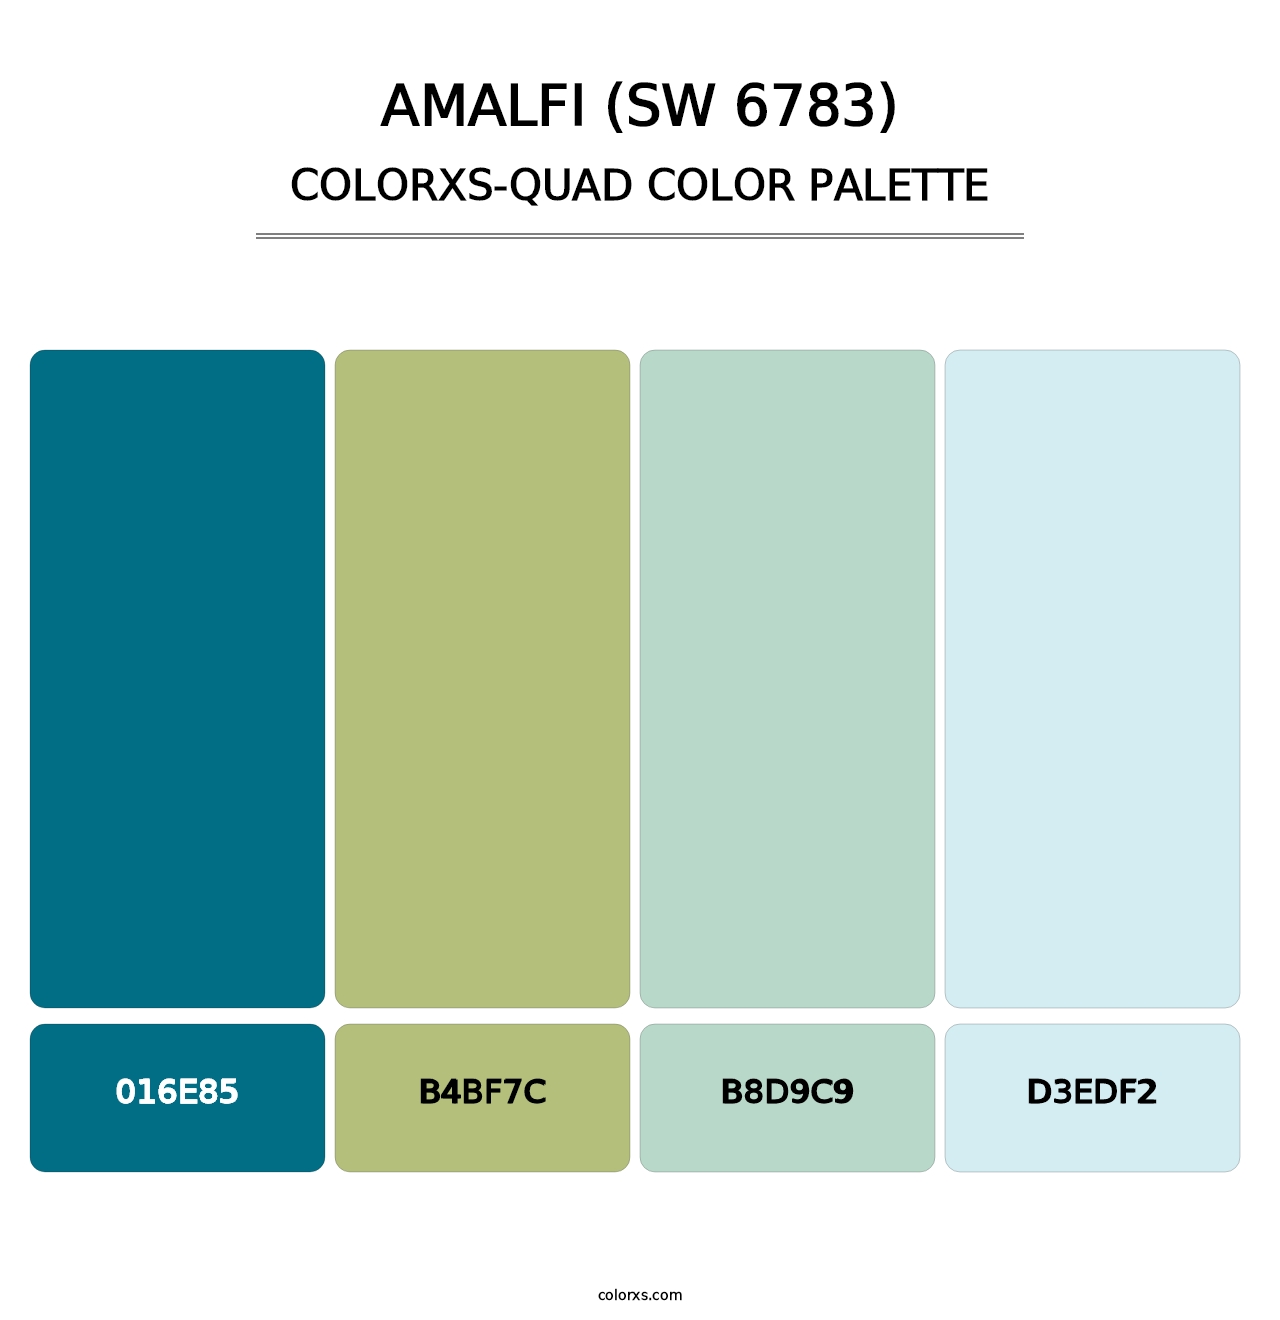 Amalfi (SW 6783) - Colorxs Quad Palette